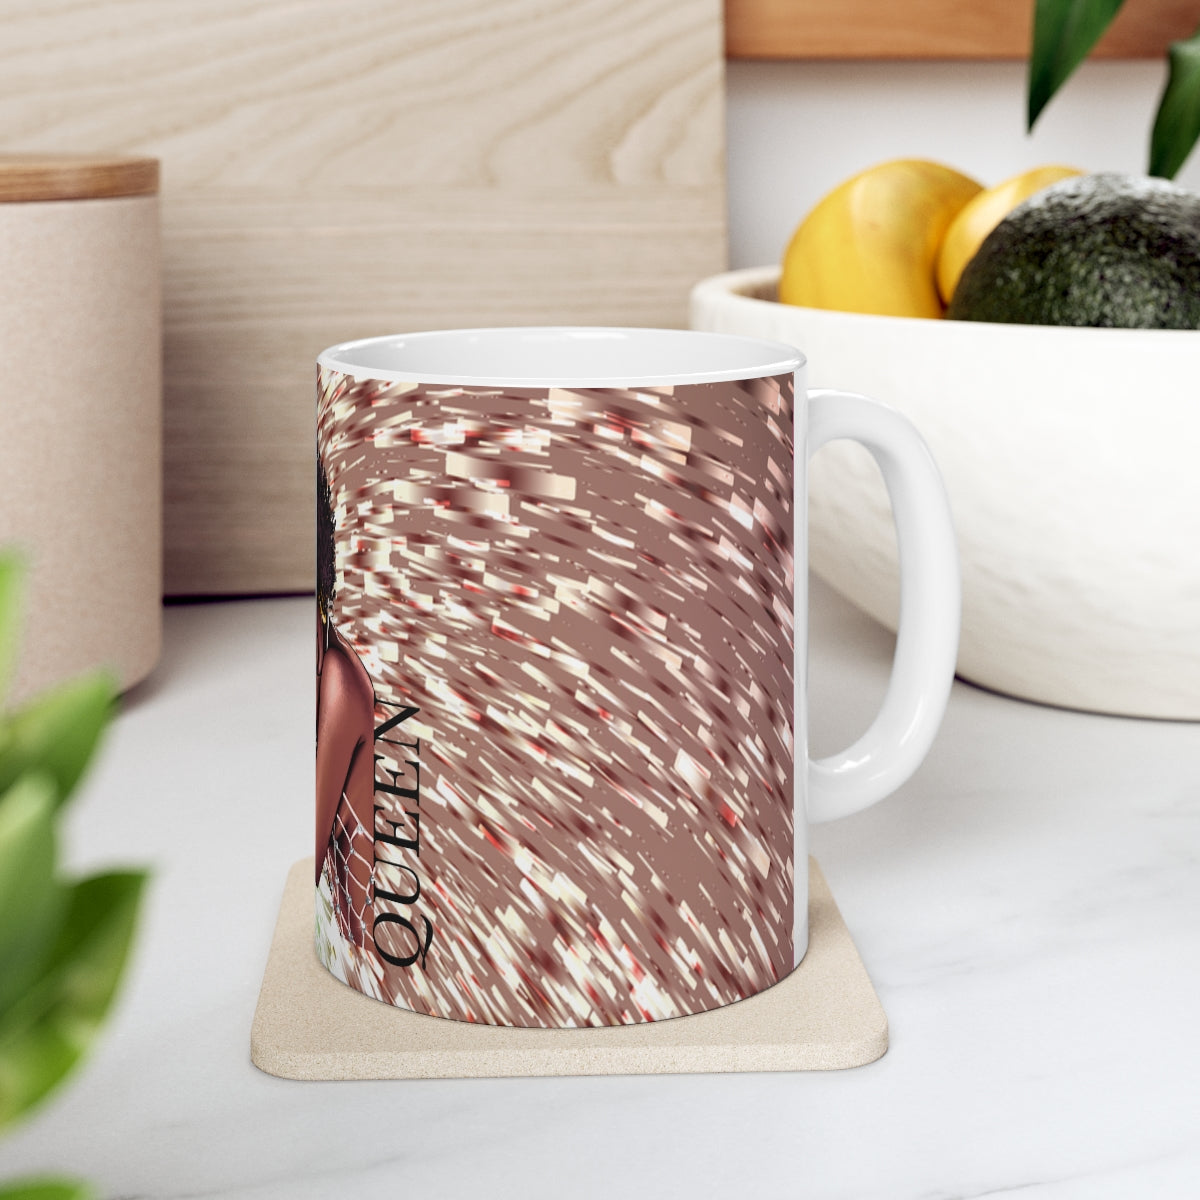 Queen Ceramic Mug 11oz